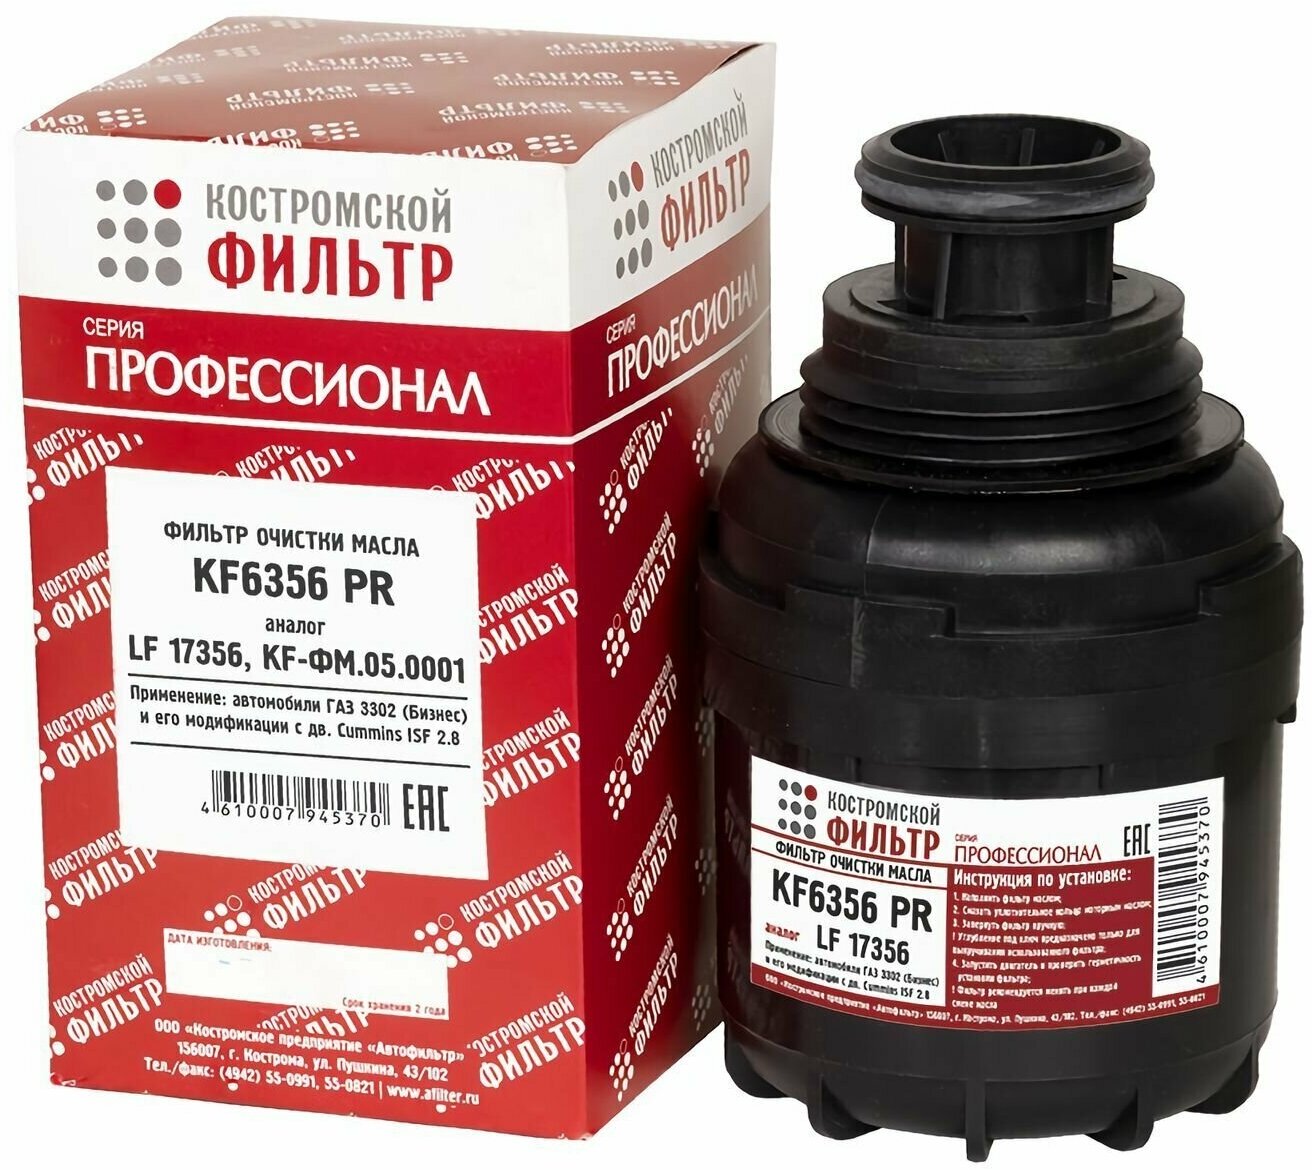 Фильтр масляный ГАЗ-3302 двигатель Cummins ISF 2.8, LF17356 "Профессионал", "Костромской фильтр", KF6356PR